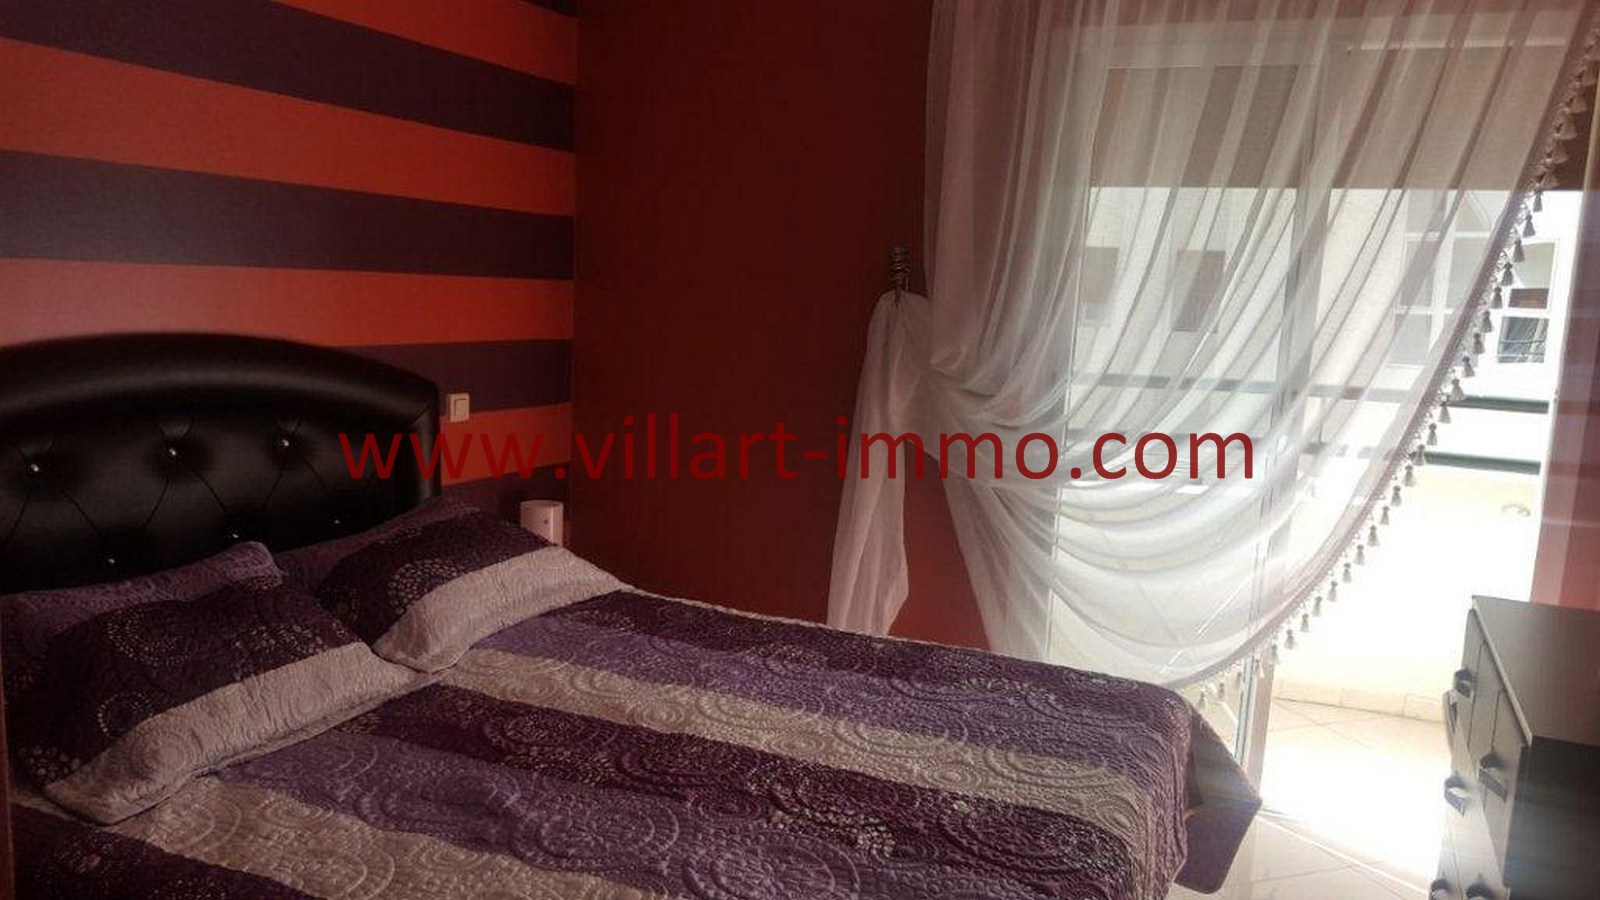 3-Vente-Appartement-Tanger-Chambre à coucher -VA514-Route de Rabat-Villart Immo